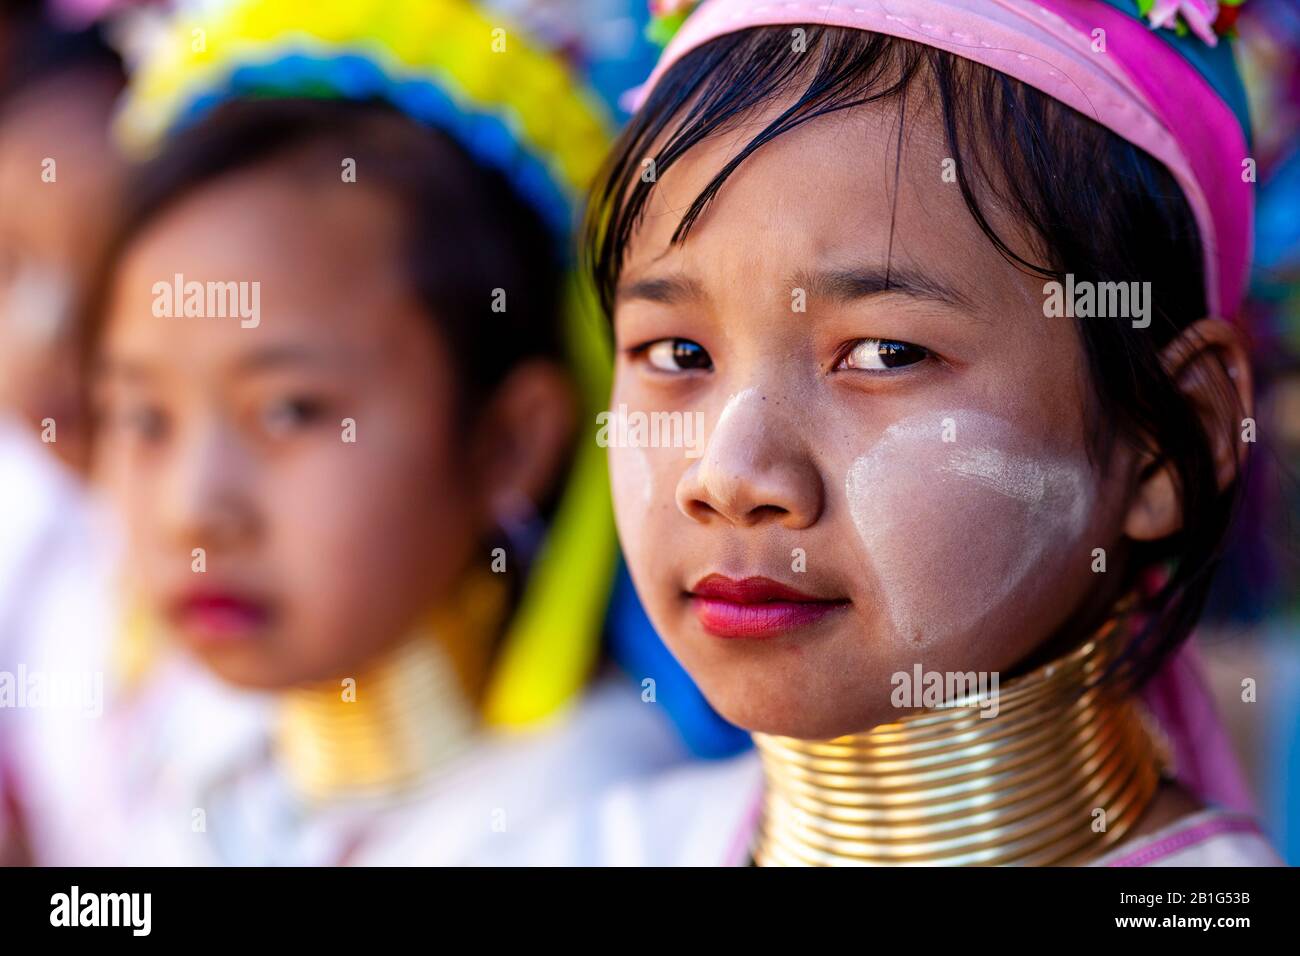 Un Gruppo Di Bambini Del Gruppo Di Minoranza Di Kayan (Collo Lungo) Nel Costume Tradizionale, Villaggio Del Pan Pet, Loikaw, Stato Di Kayah, Myanmar. Foto Stock